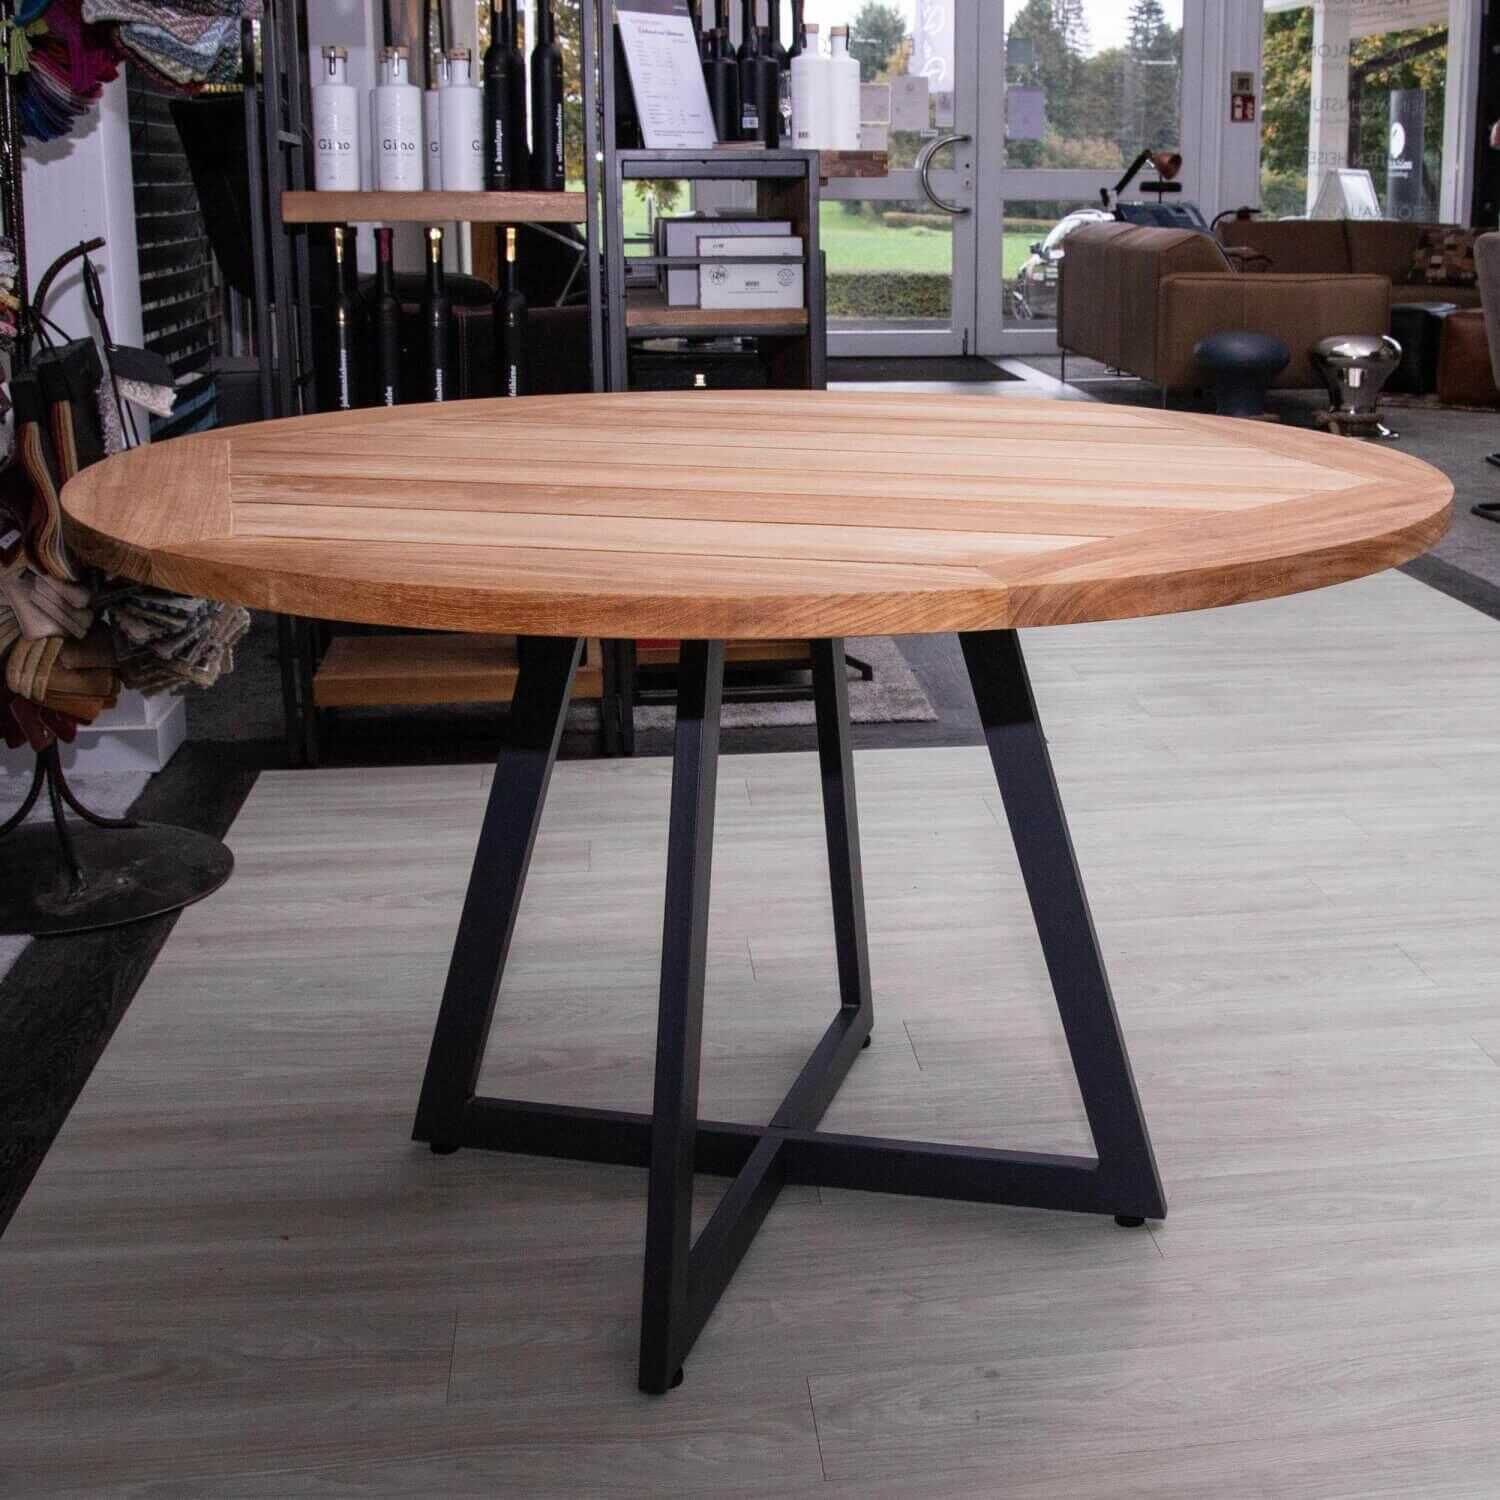 Tischgruppe Milan Gartentisch Tischplatte Teak Massiv mit 4 Stühlen